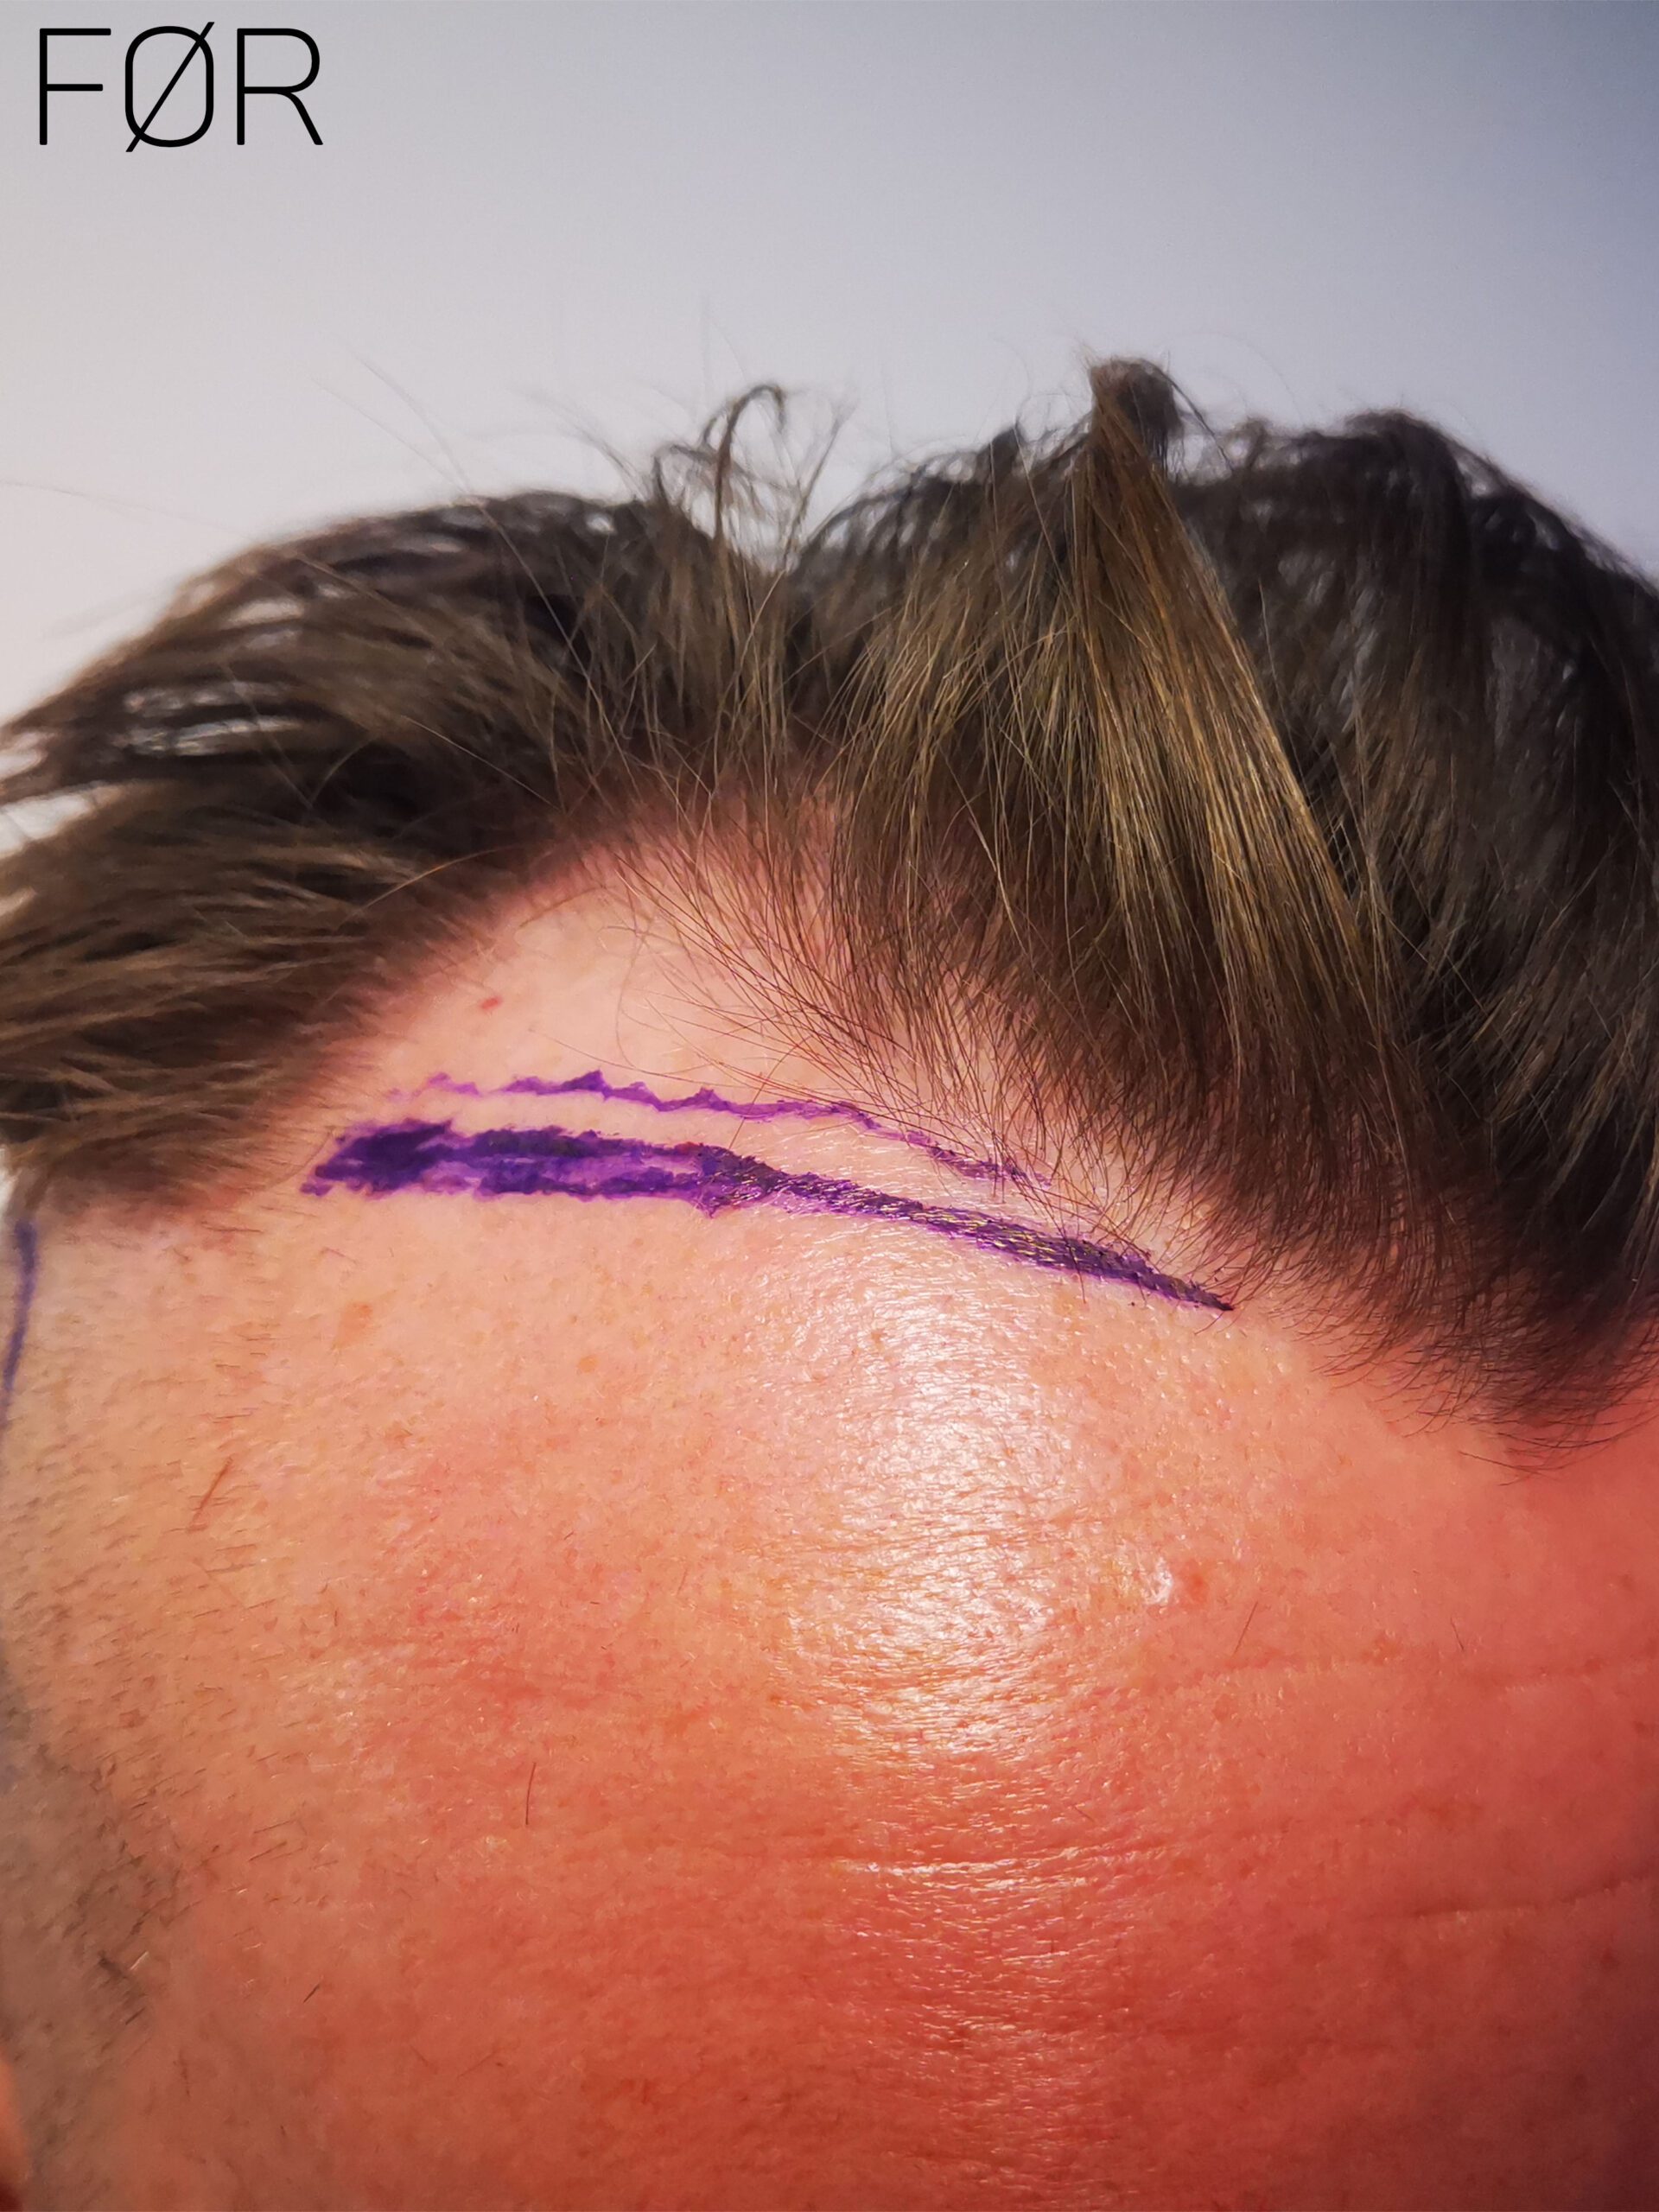 Mann før hårtransplantasjon. Hvit bakgrunn. Tegnet på hodet.